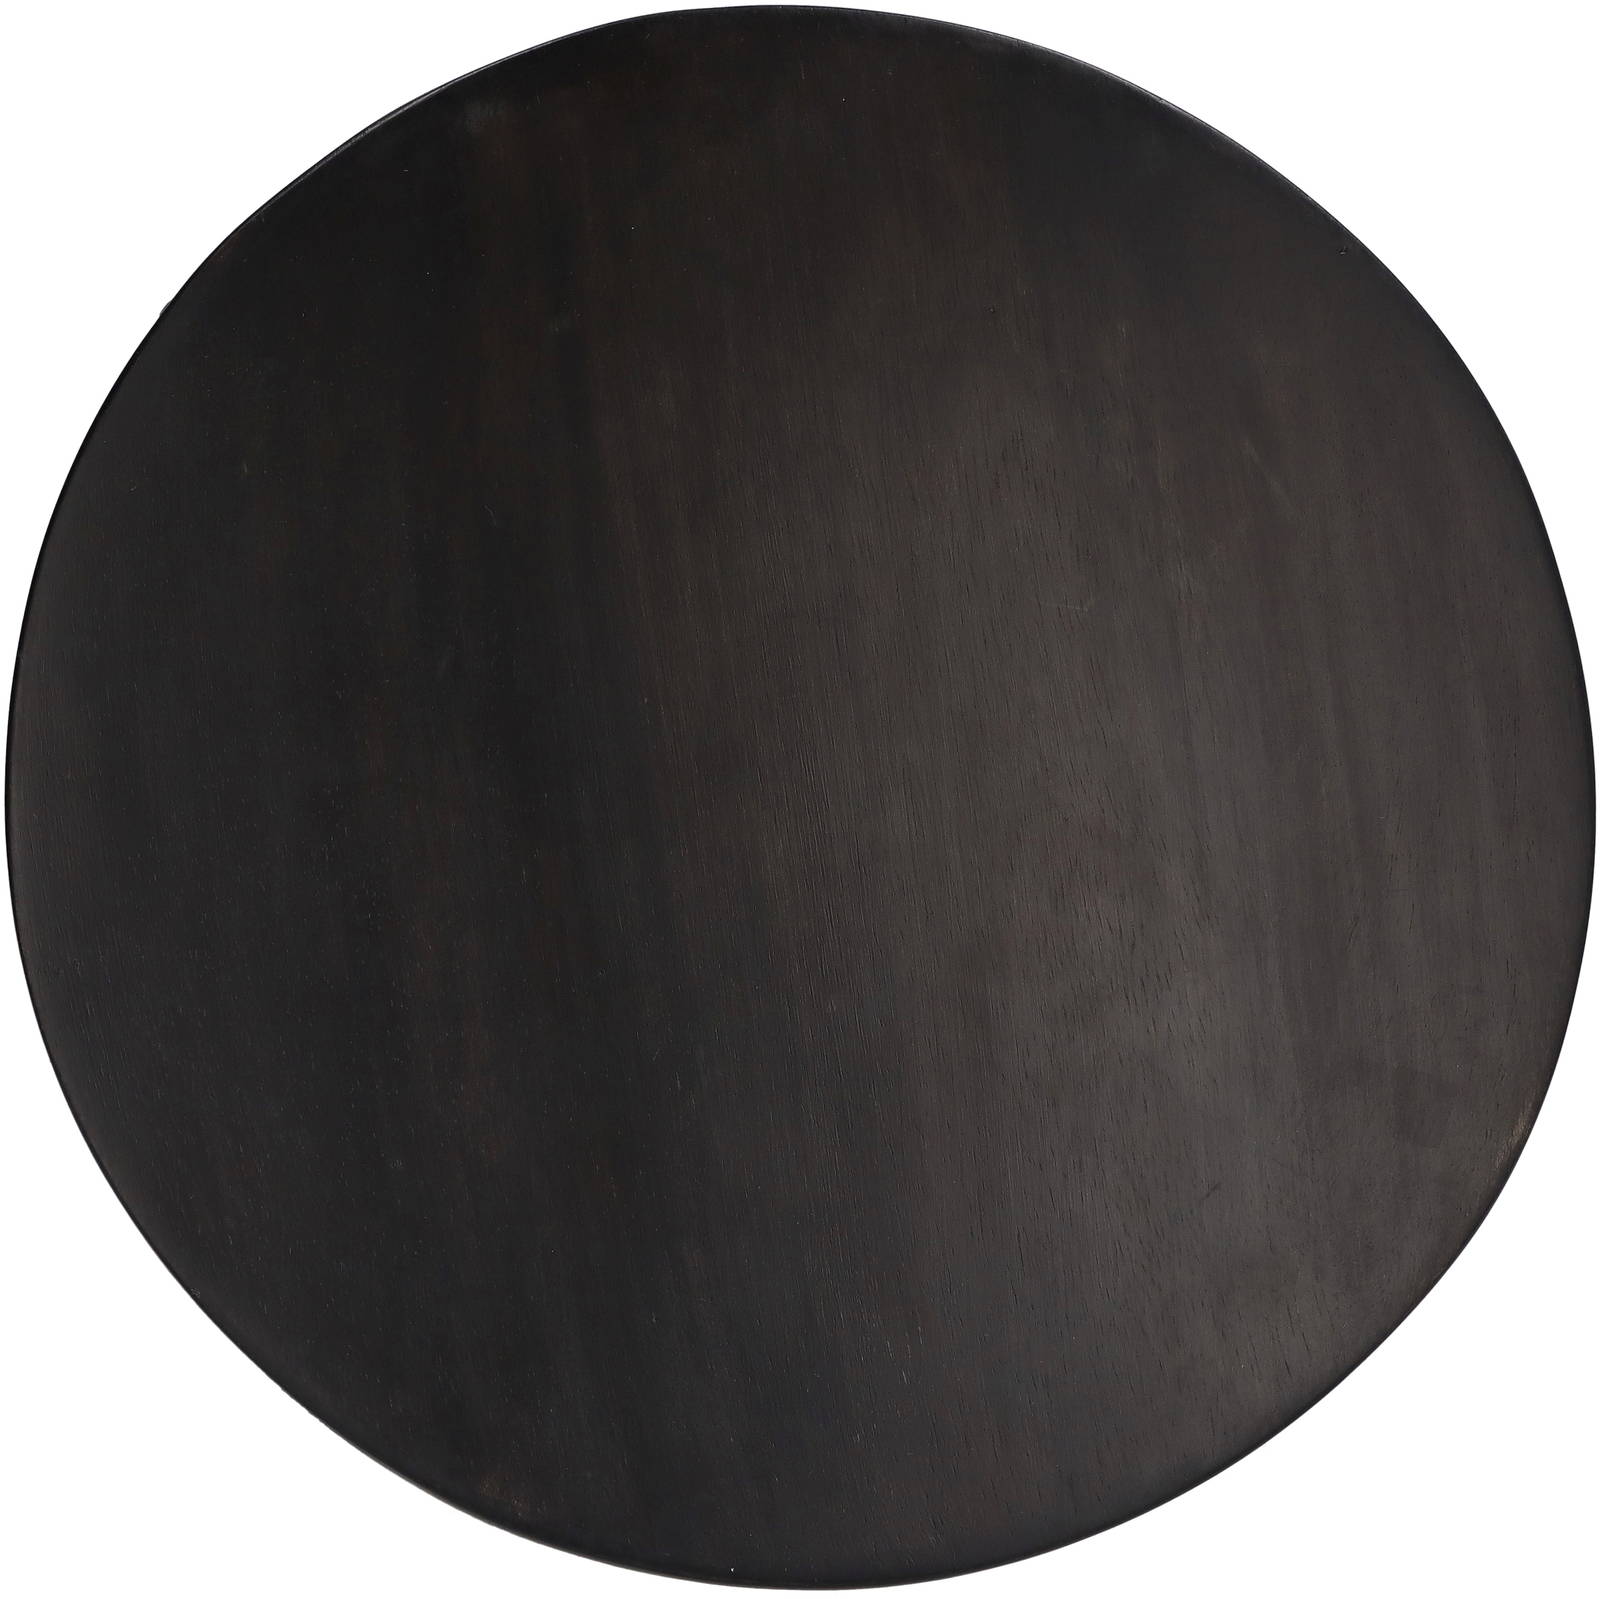 Plate Wood Black